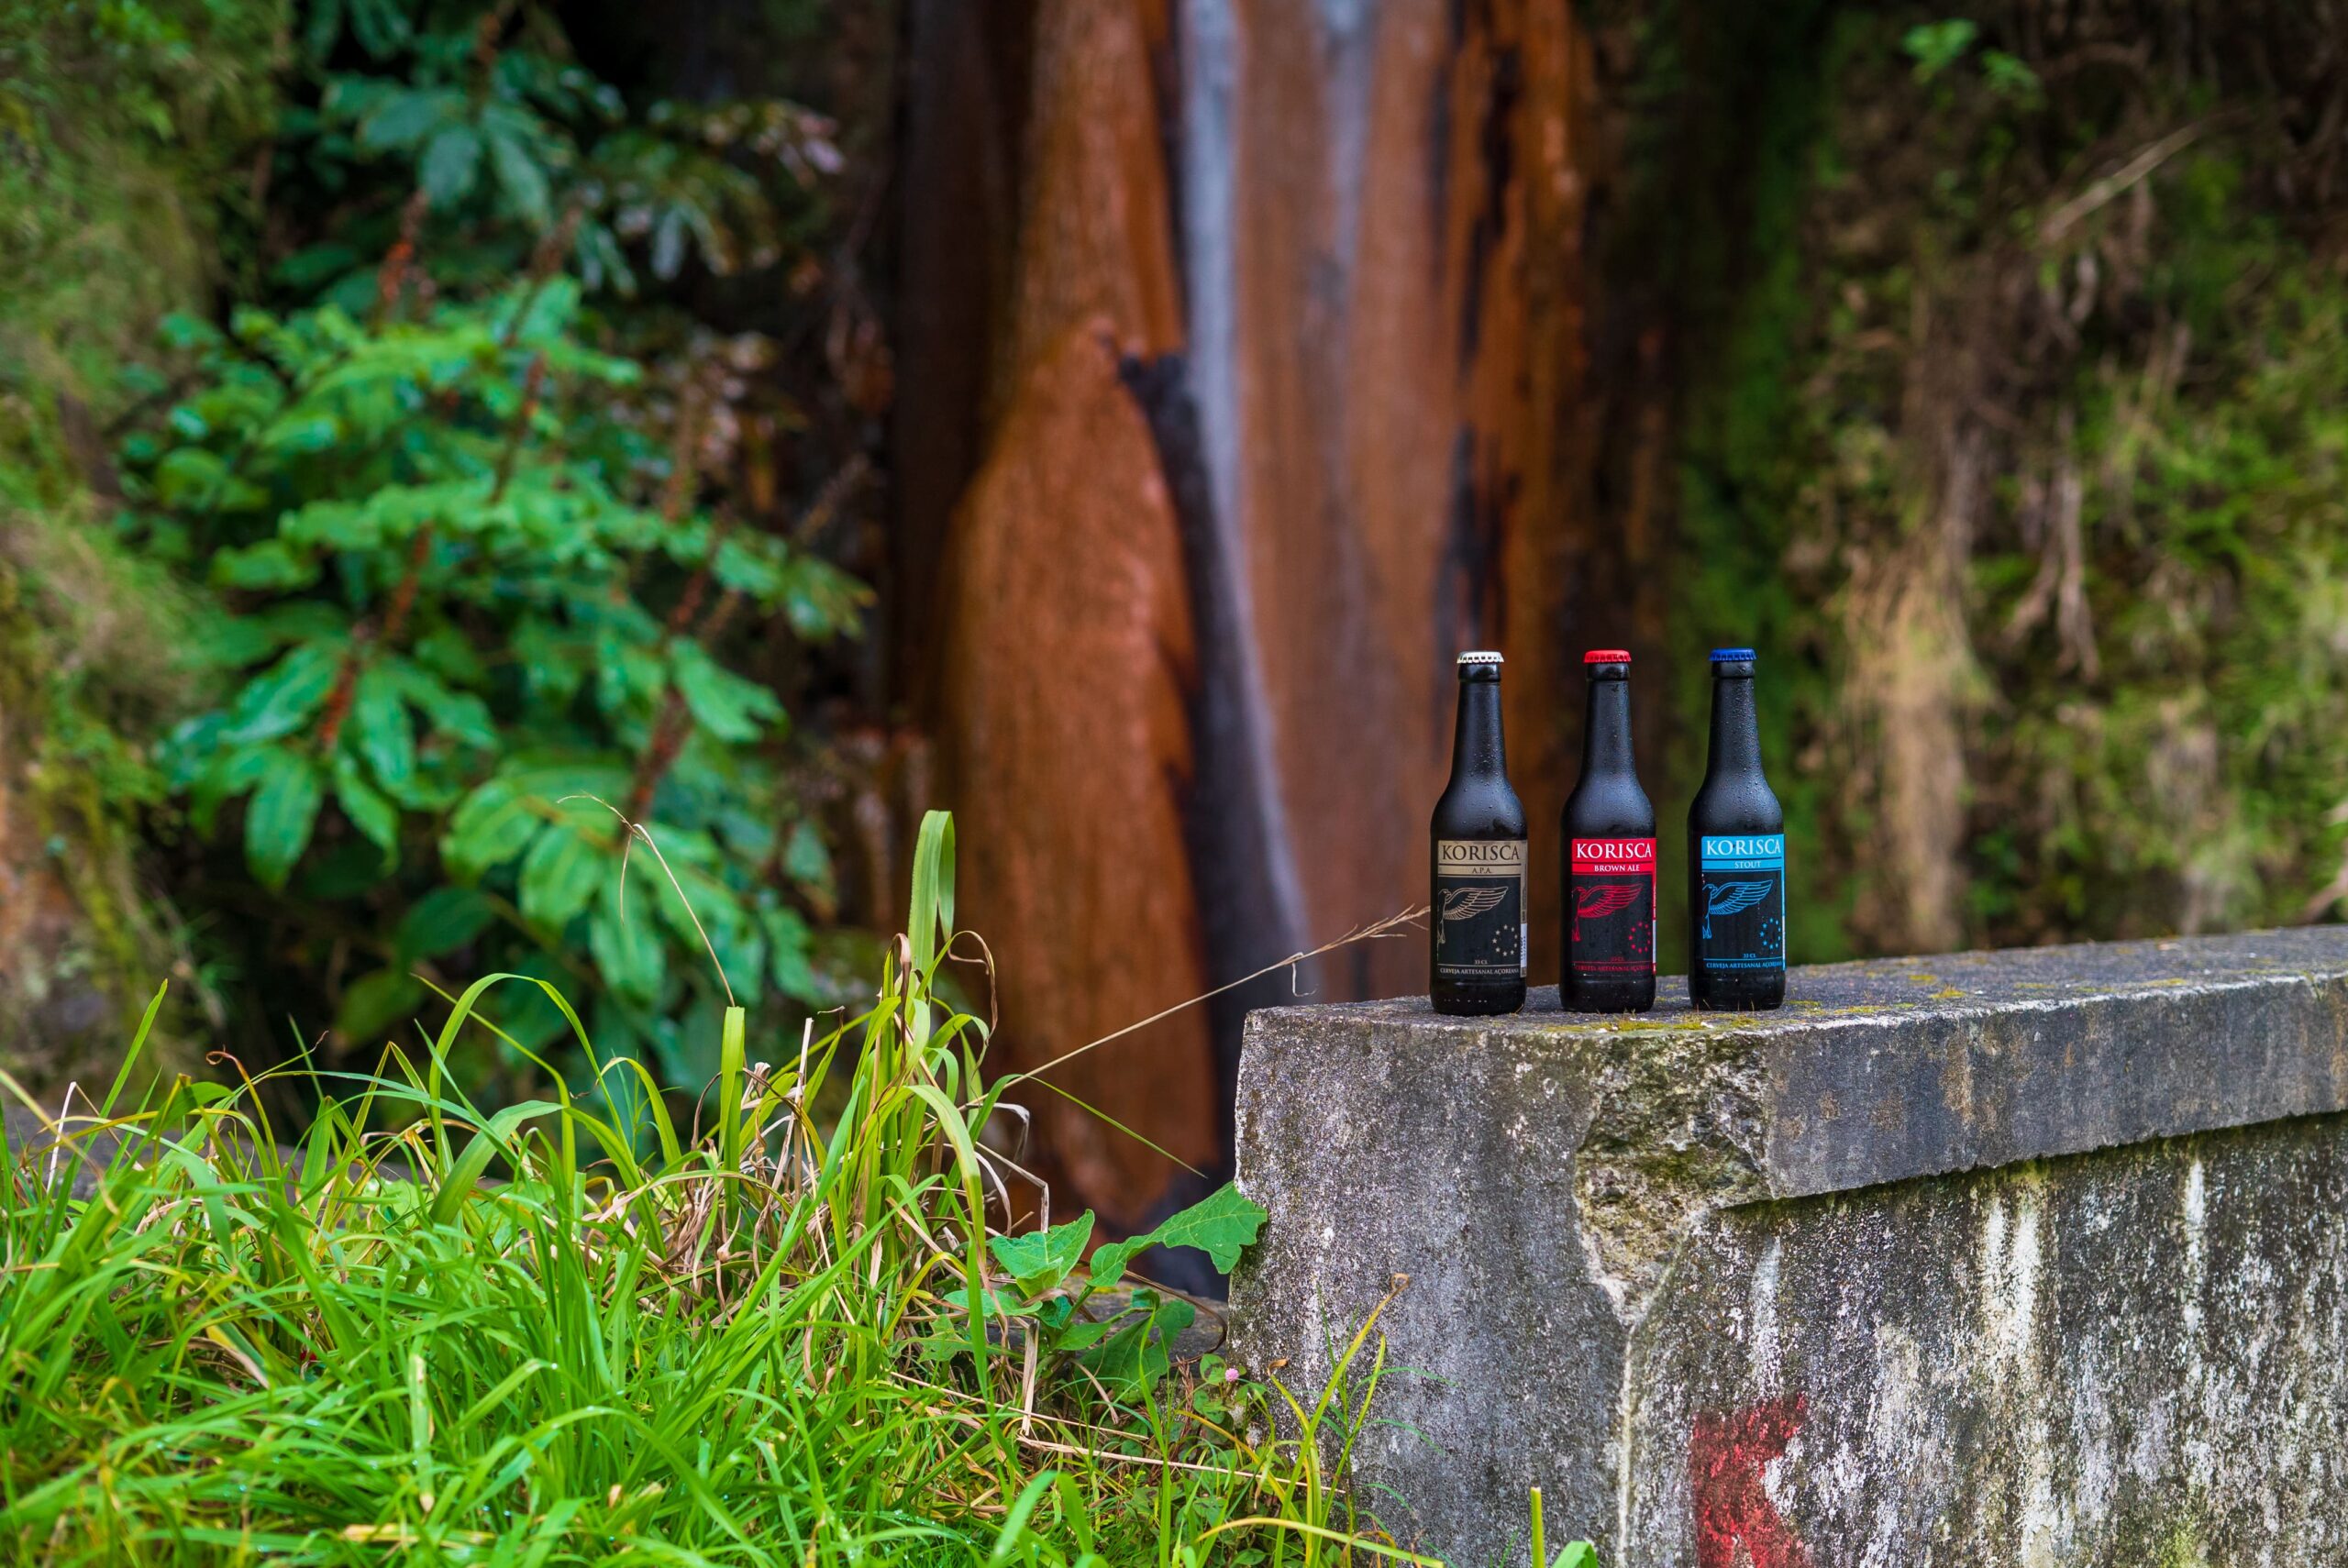 Cerveja artesanal açoriana Korisca Clássica II (APA), Korisca Clássica I (Brown Ale) e Korisca Clássica III (Stout), no muro, ao lado da vegetação verde, e de fundo a cascata da Ribeira Quente, Ribeira Quente, Povoação, São Miguel, Açores.